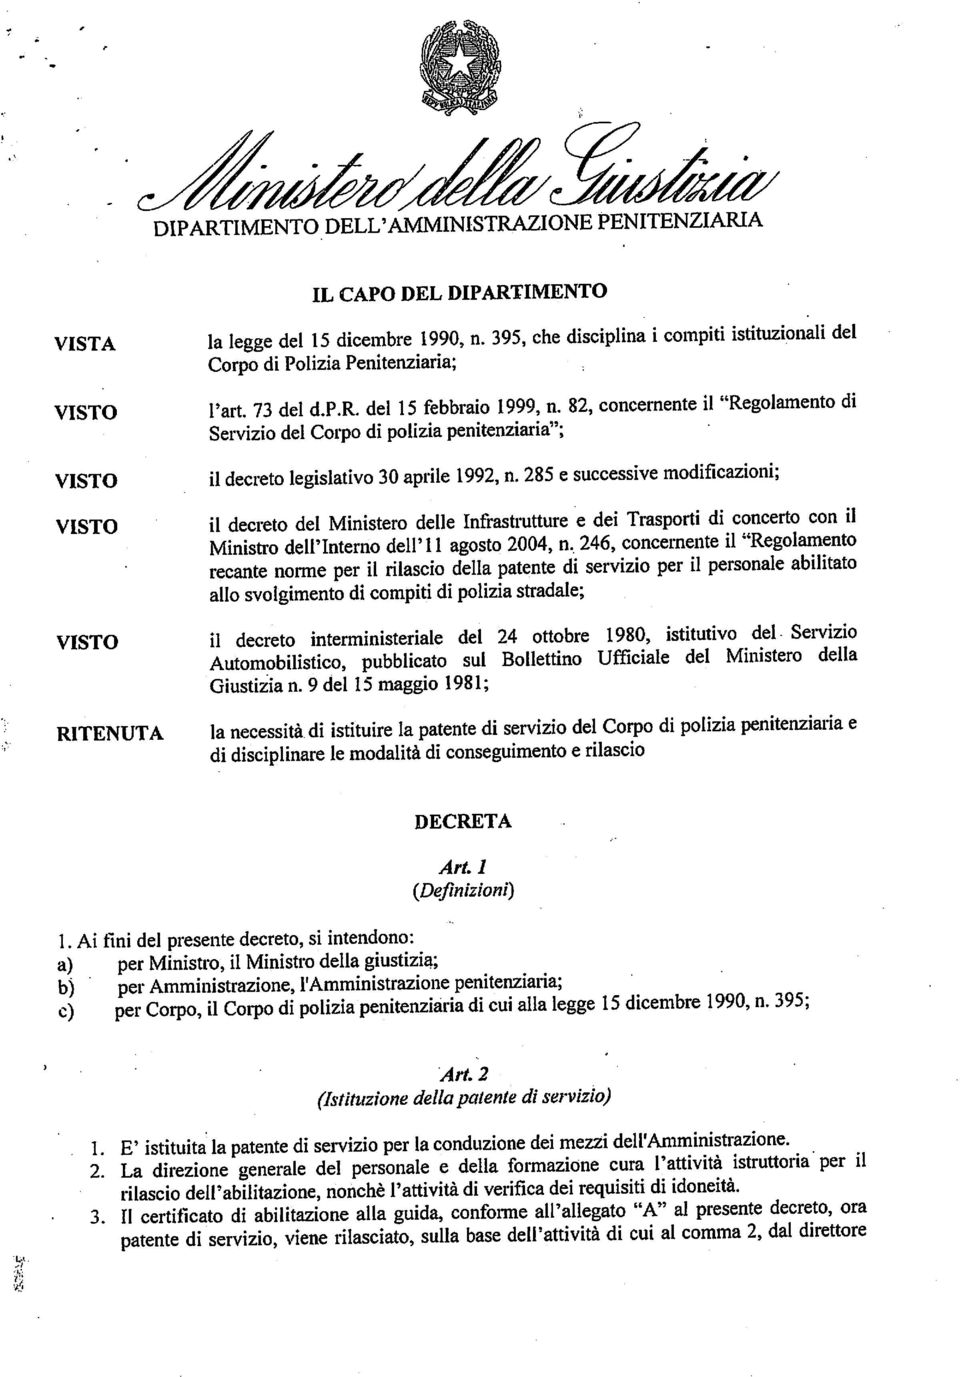 82, concernente il "Regolamento di Servizio del Corpo di polizia penitenziaria"; il decreto legislativo 30 aprile 1992, n.